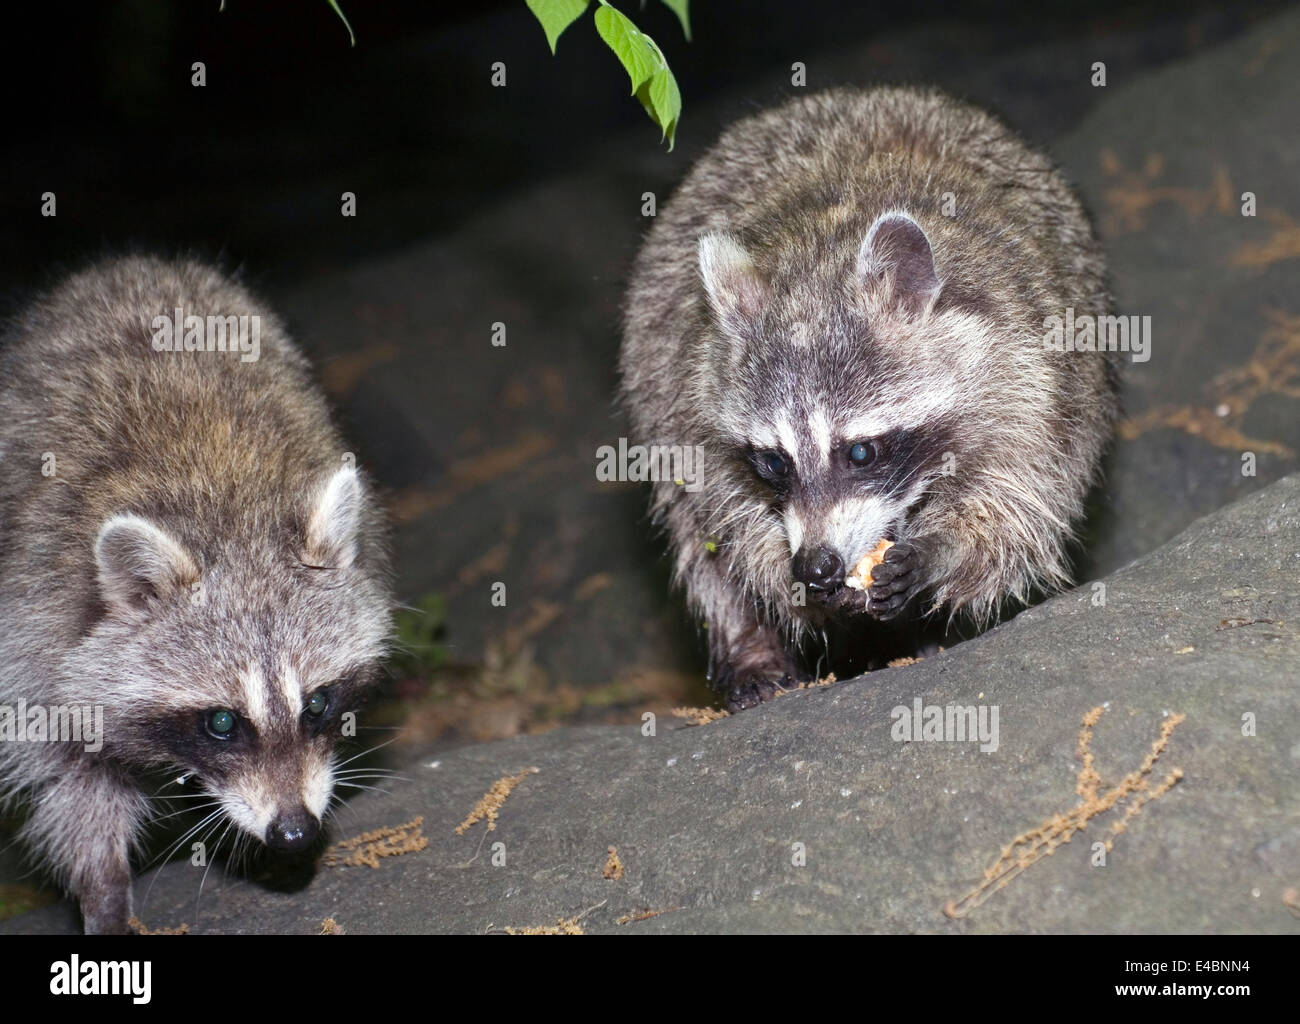 Photo de ratons laveurs prises la nuit à l'intérieur de Central Park à New York City, USA. Banque D'Images